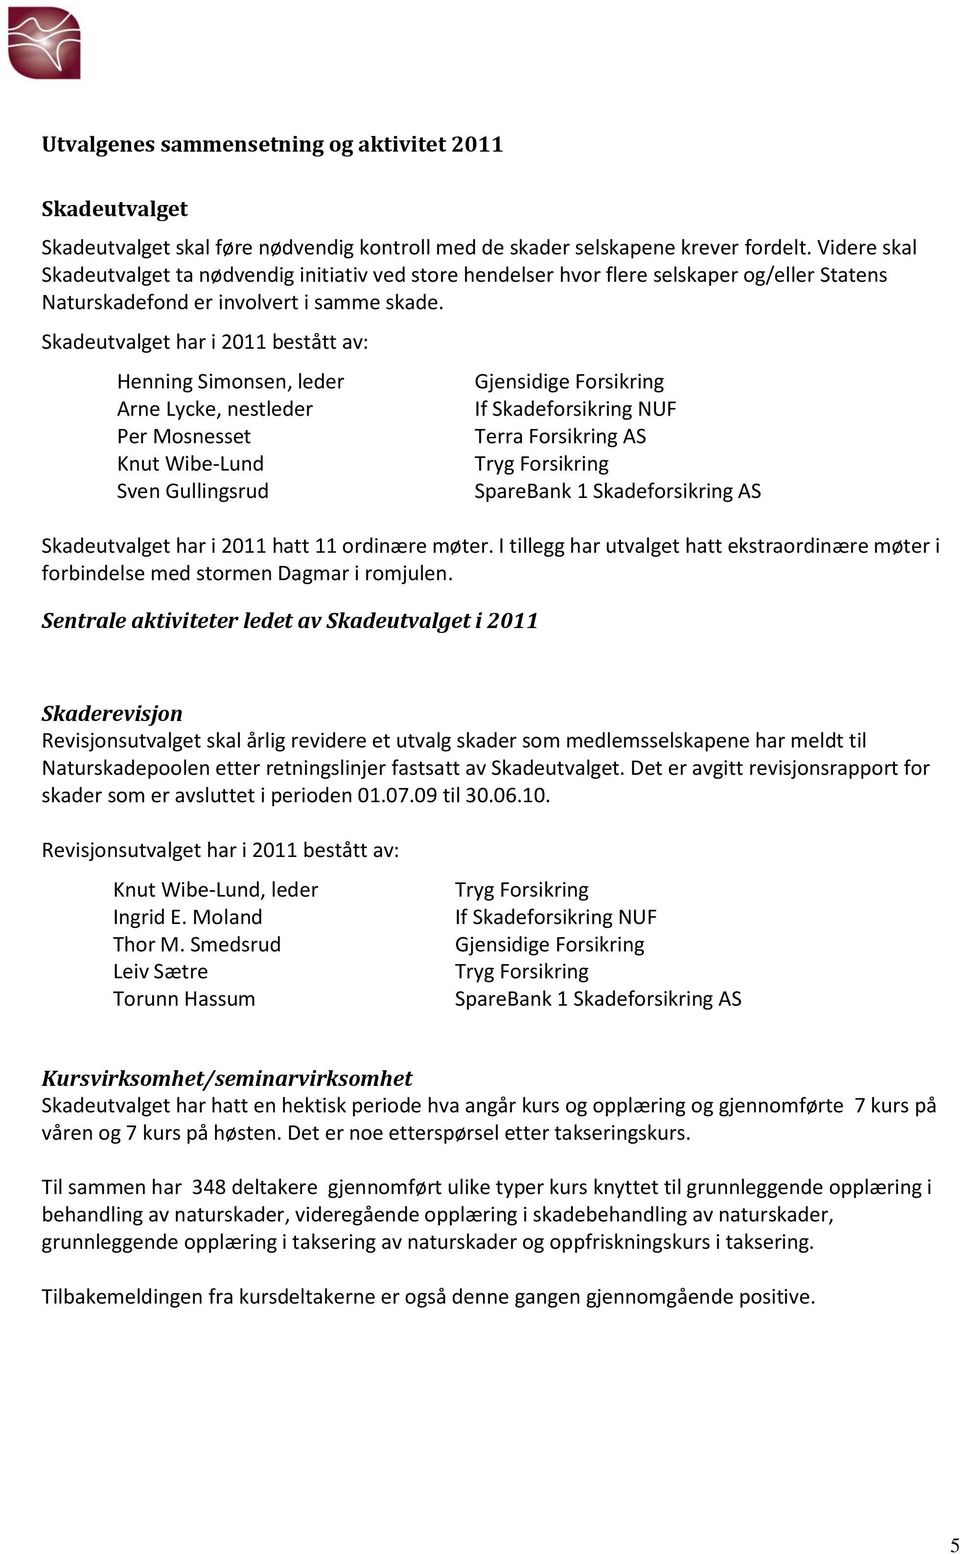 Skadeutvalget har i 2011 bestått av: Henning Simonsen, leder Arne Lycke, nestleder Per Mosnesset Knut Wibe-Lund Sven Gullingsrud Terra Forsikring AS Skadeutvalget har i 2011 hatt 11 ordinære møter.